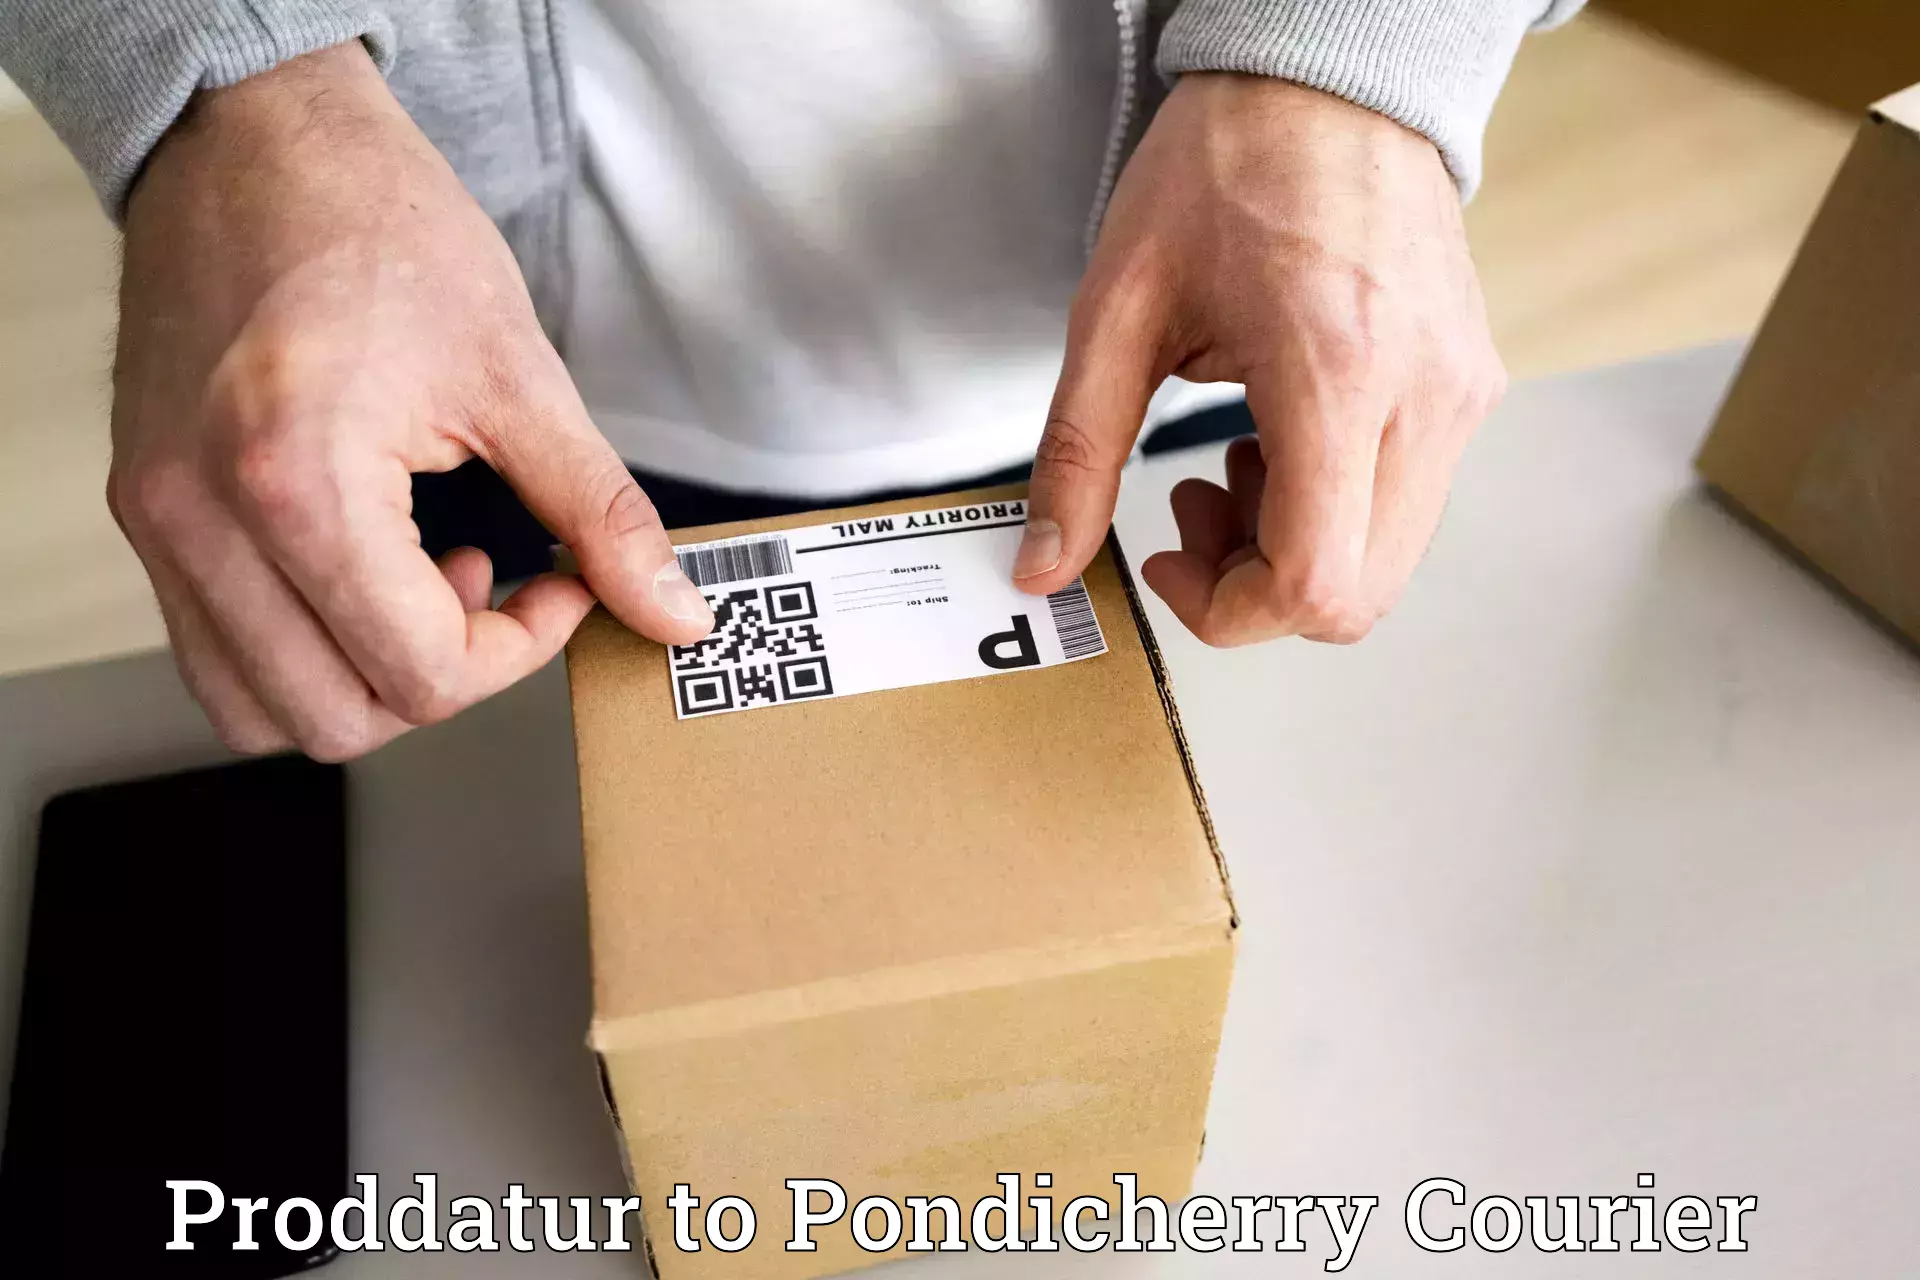 Efficient parcel service Proddatur to Pondicherry